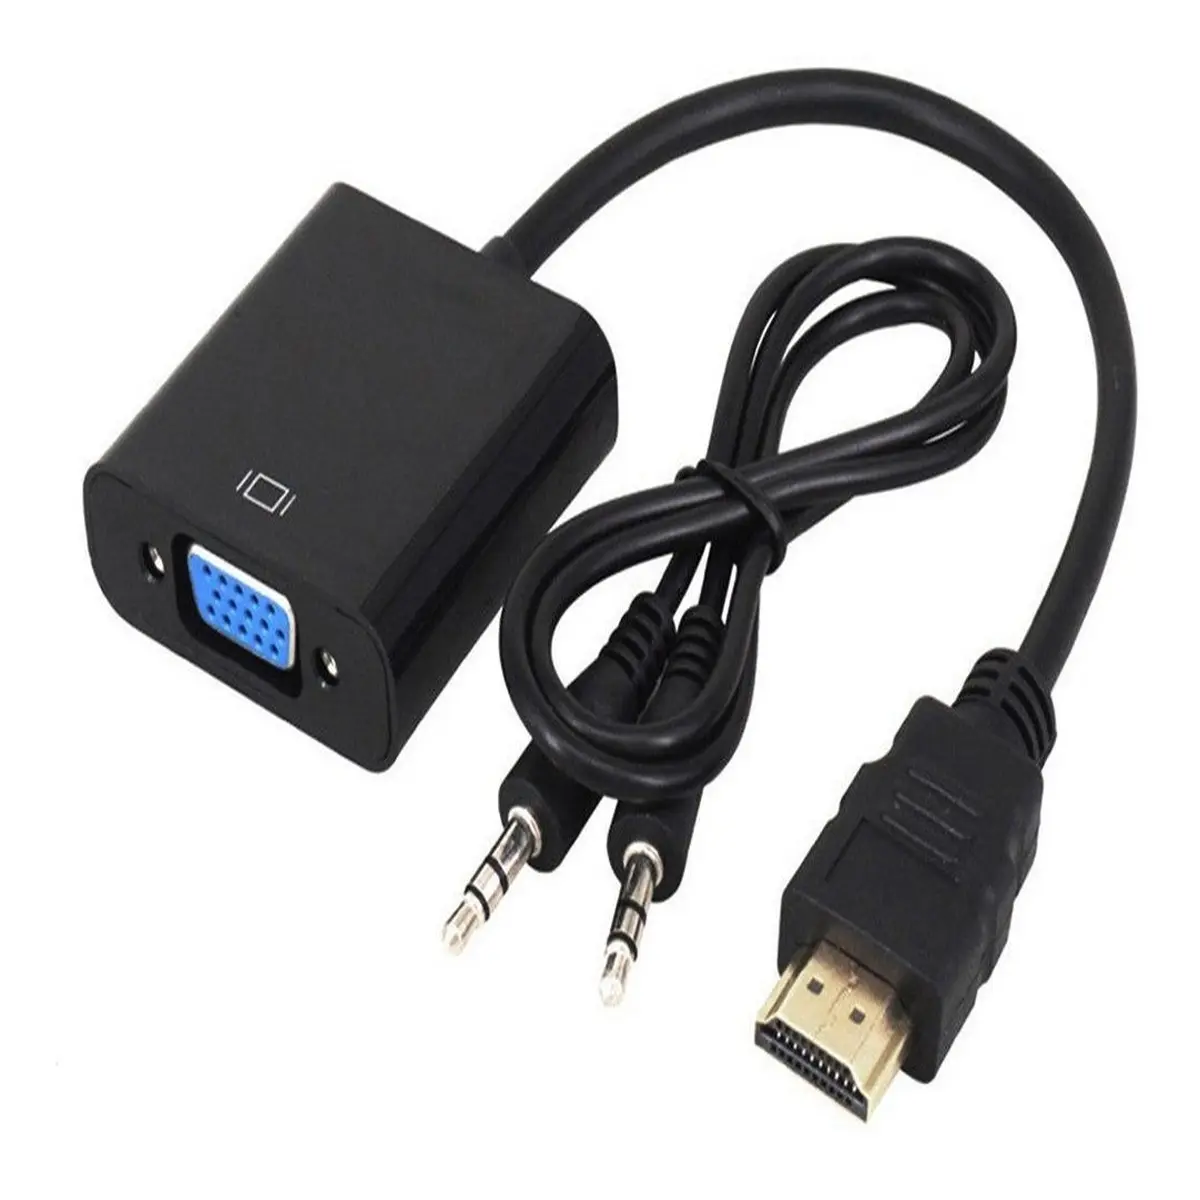 Conversor VGA - HDMI NP-HD769 - Adaptadores, Cables, Video